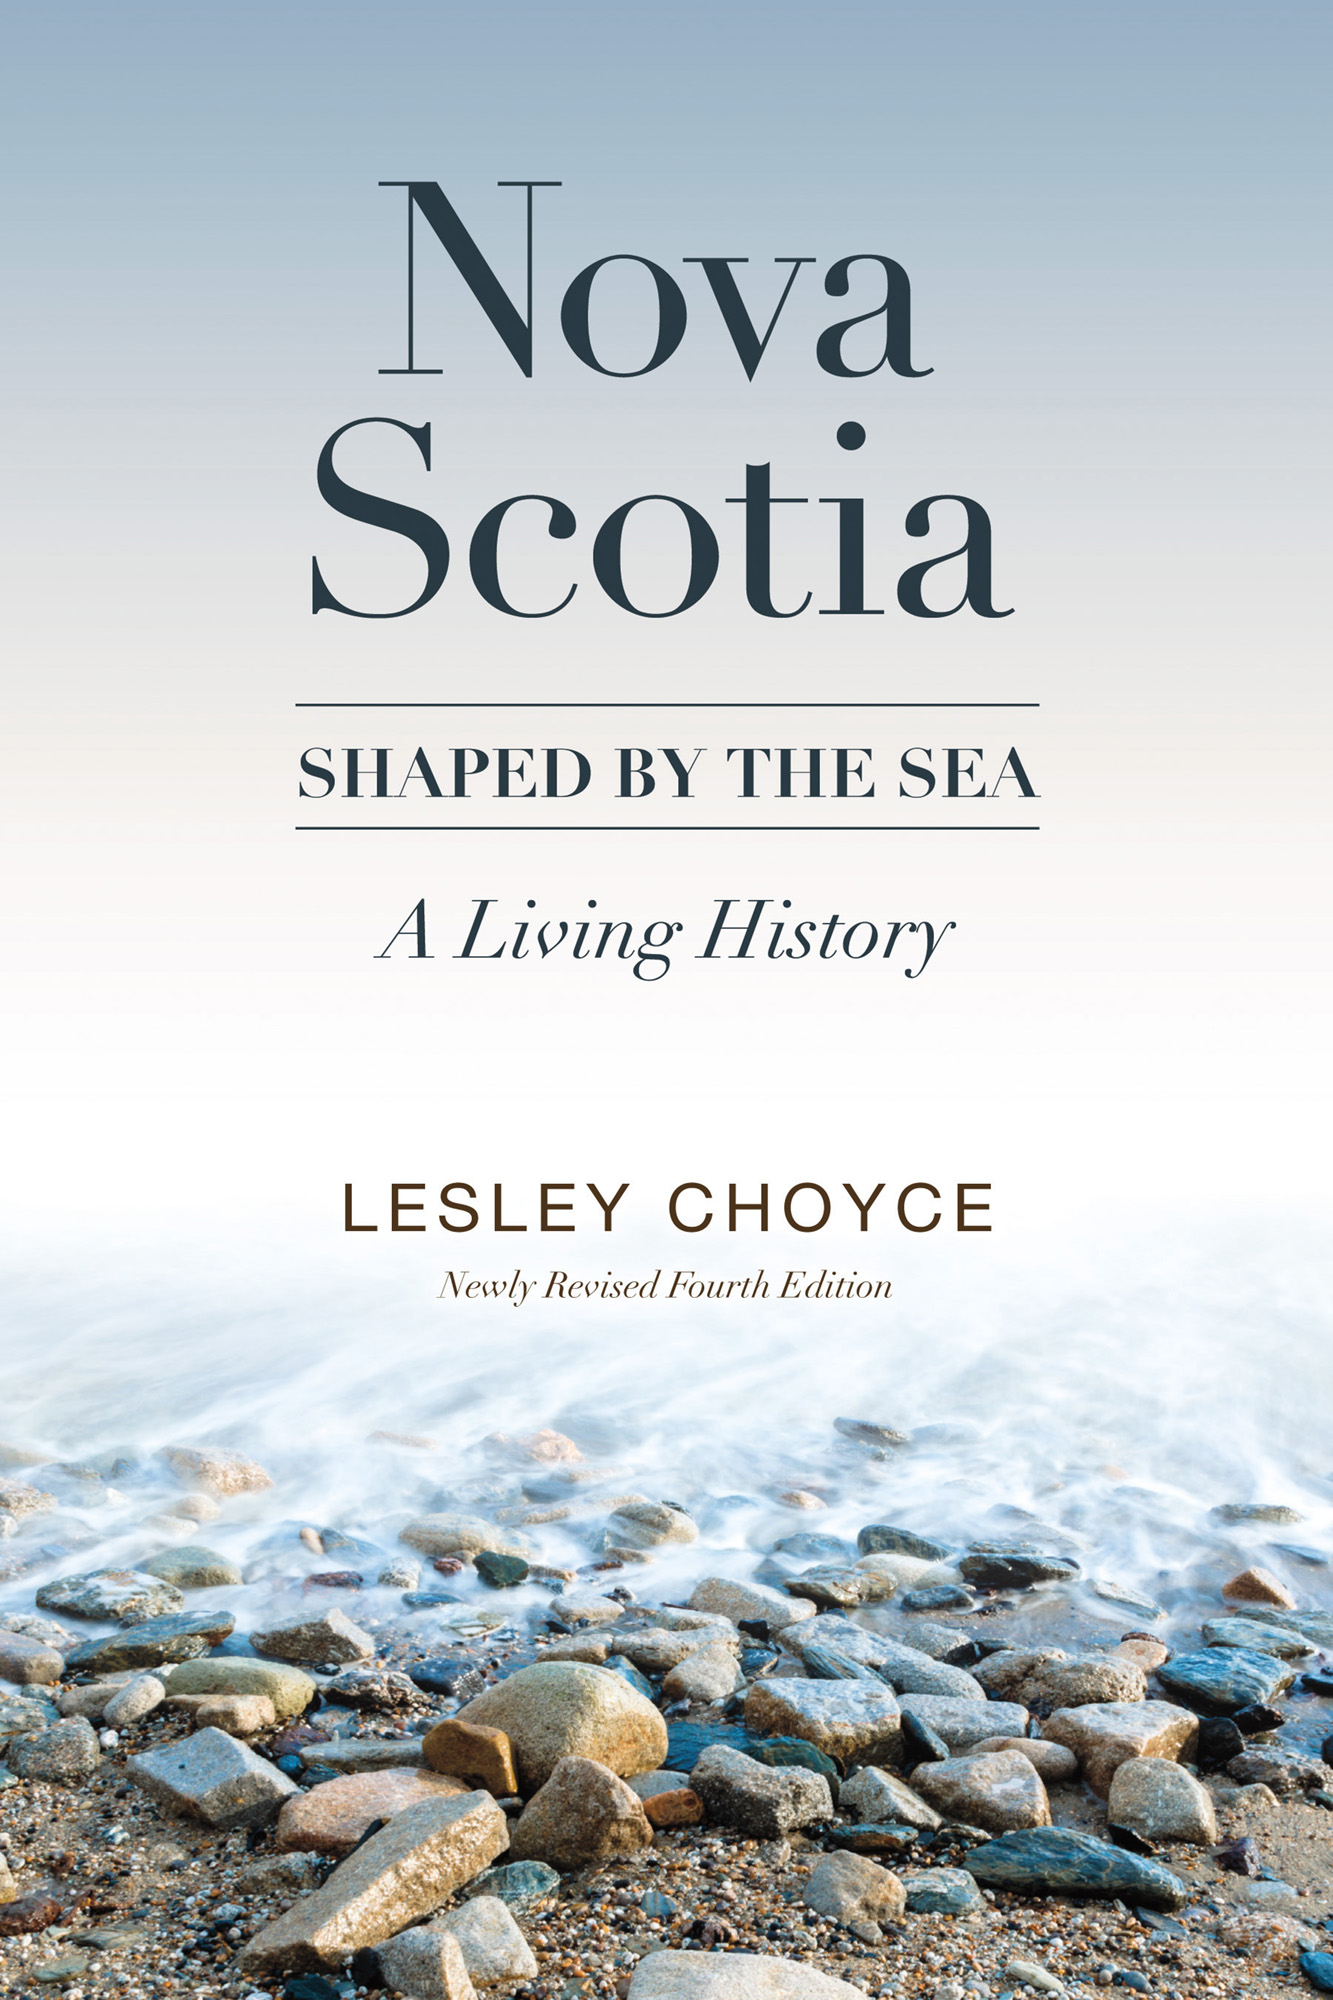 Nova Scotia: Shaped by the Sea